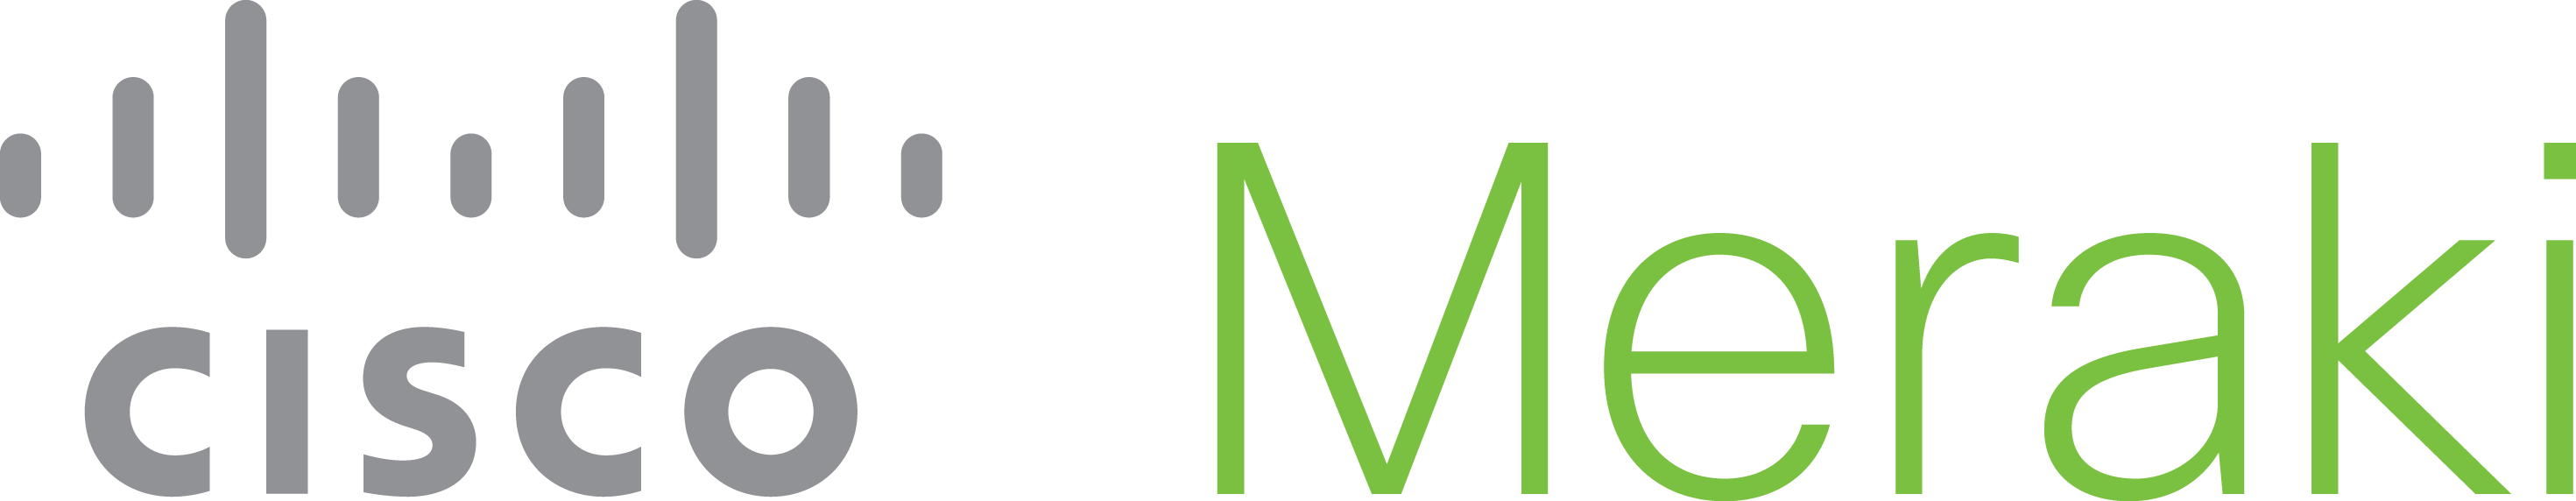 Meraki Logo - cisco-meraki-logo - Freckle IoT